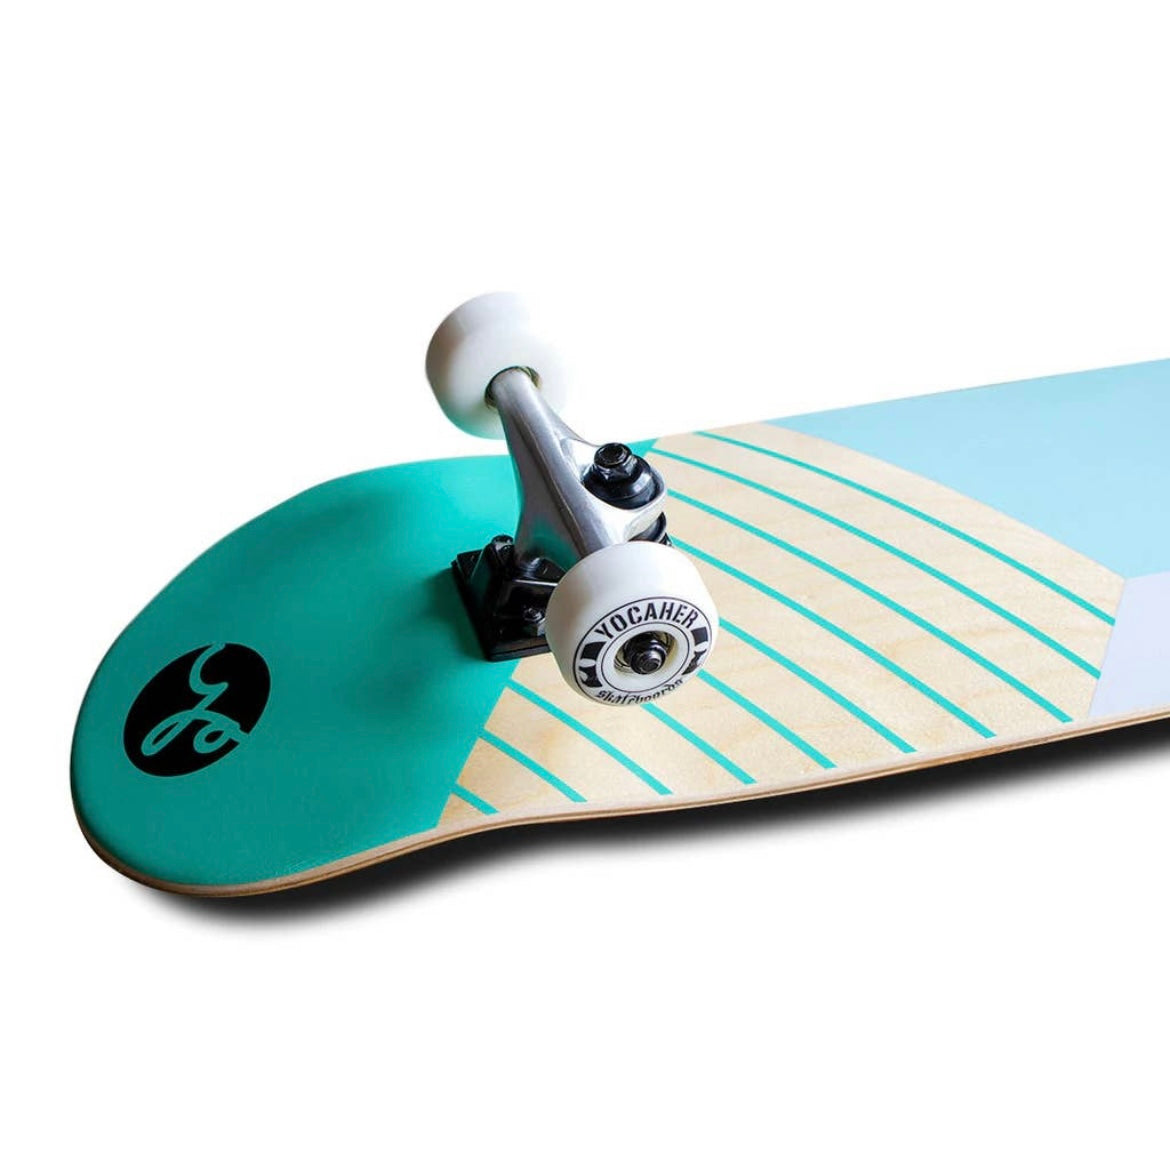 Skateboard Yocaher Geometric Green